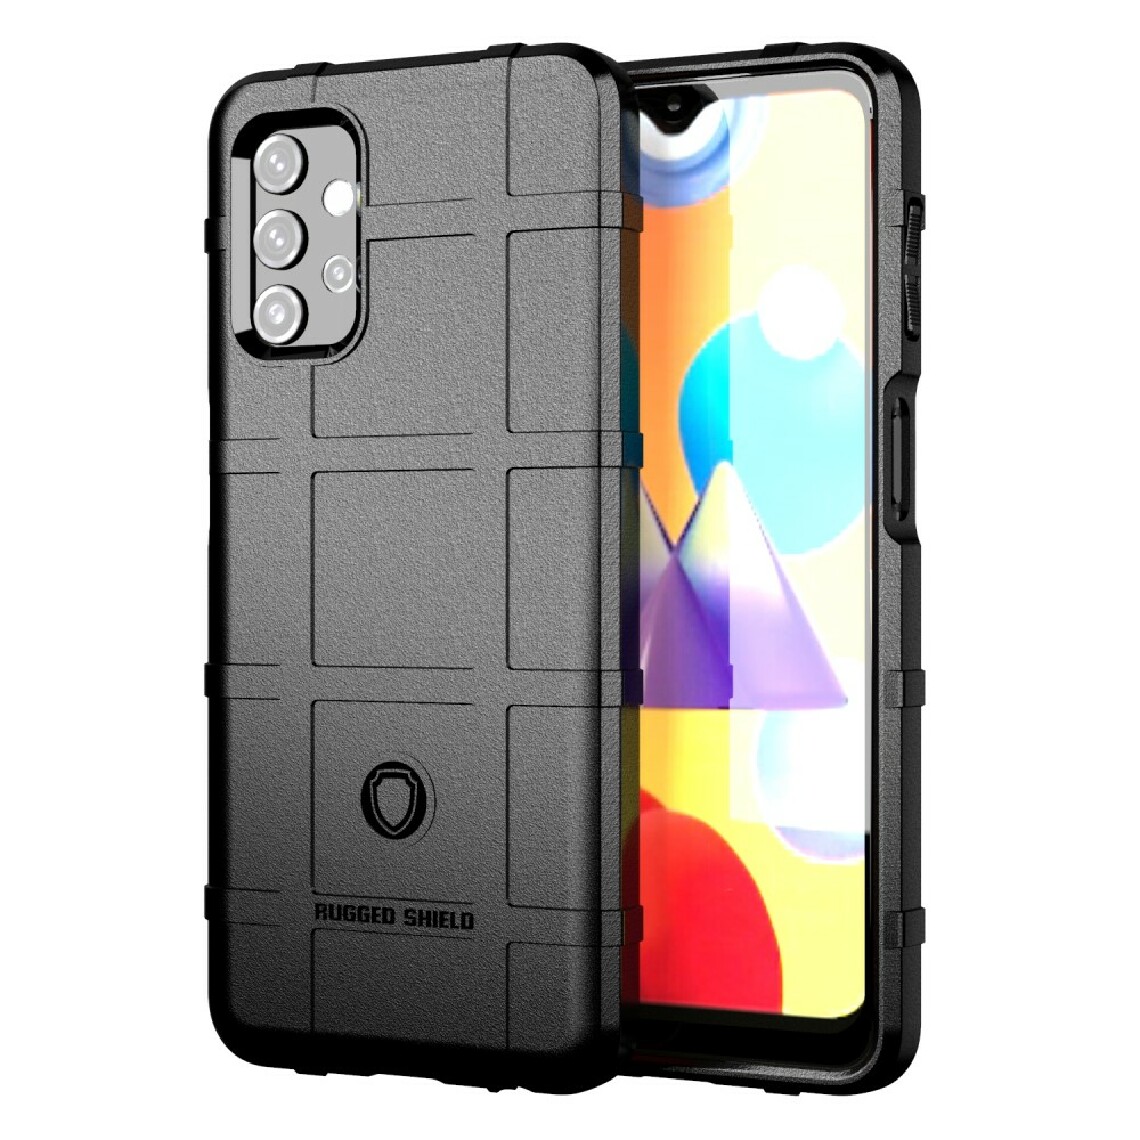 Other - Coque en TPU absorption des chocs avec une conception de texture de grille carrée robuste noir pour votre Samsung Galaxy A32 - Coque, étui smartphone